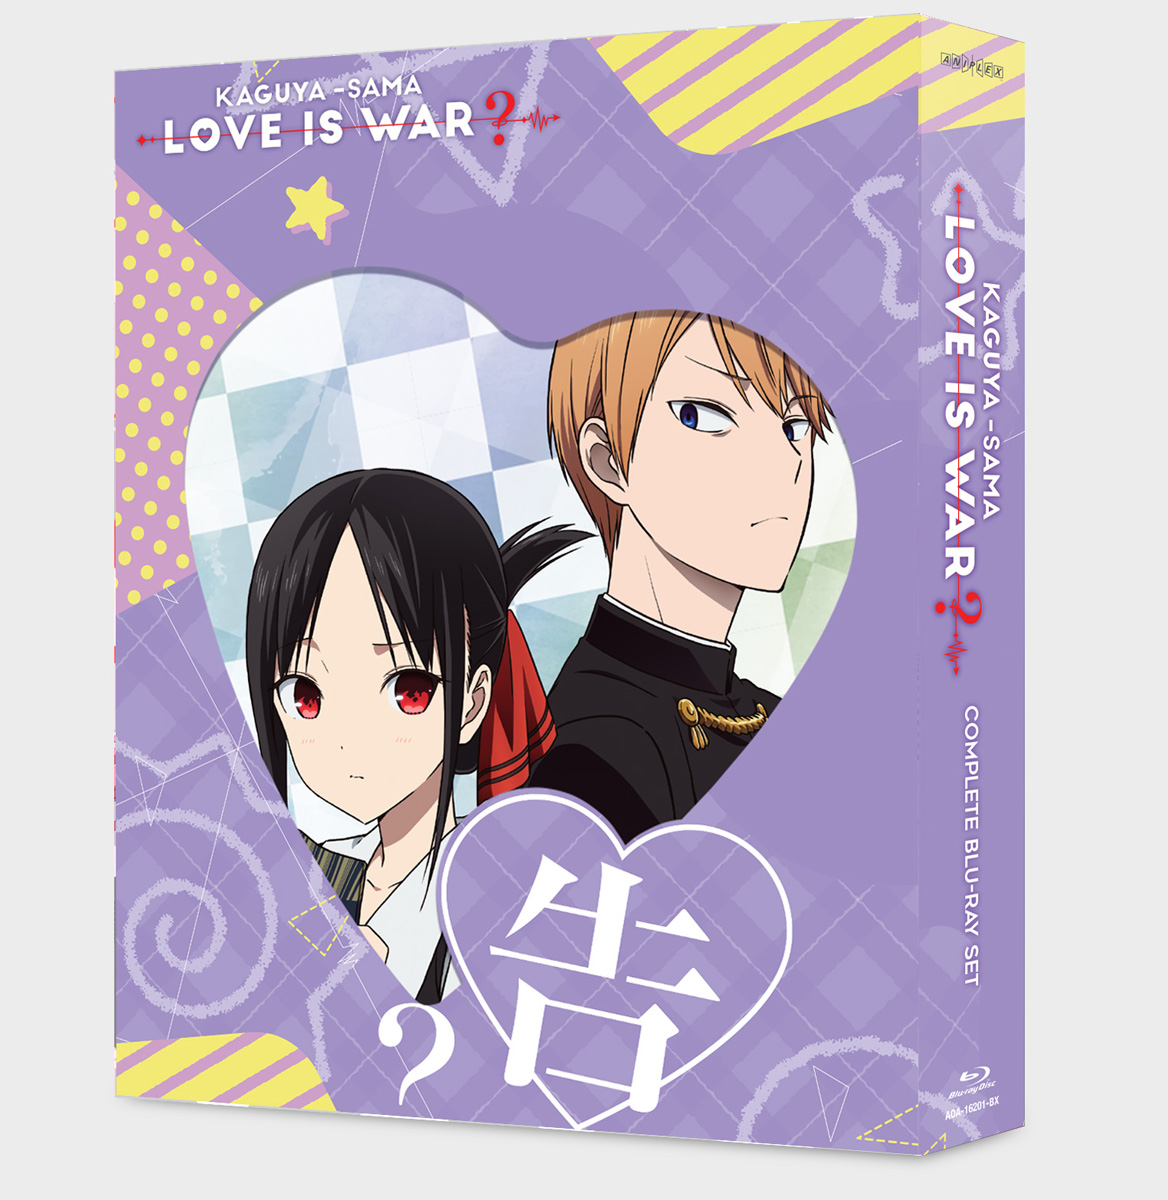 Kaguya-sama: Love Is War added - Kaguya-sama: Love Is War